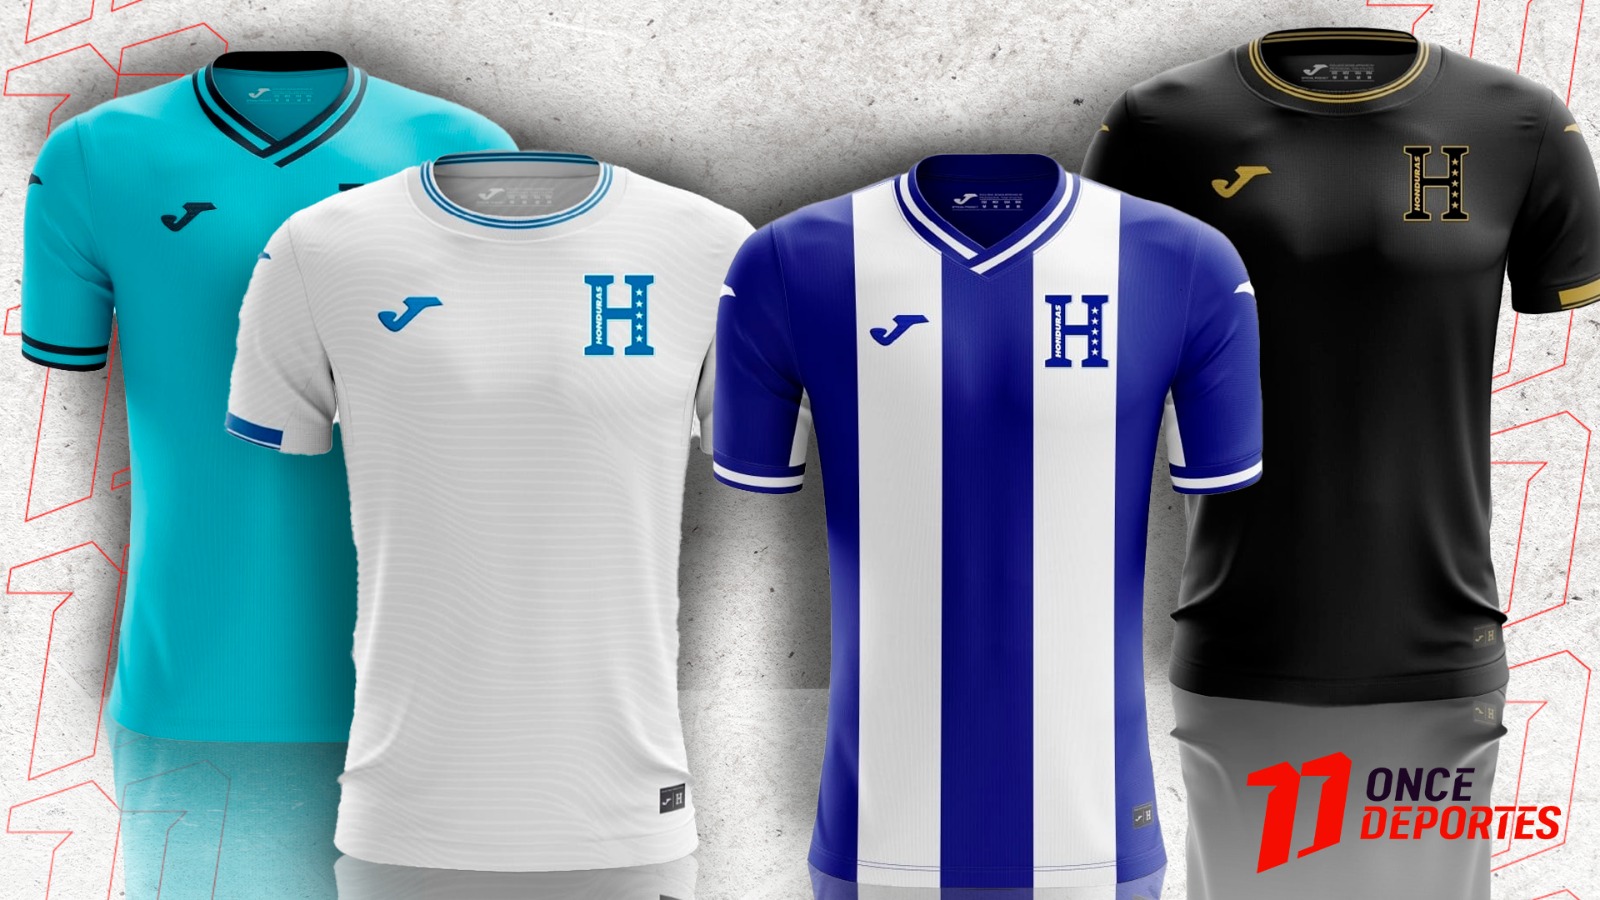 El día de hoy martes 23 de abril la Federación de Fútbol de Honduras (FFH) anunciaron la nuevas camisetas de la Selección de Honduras